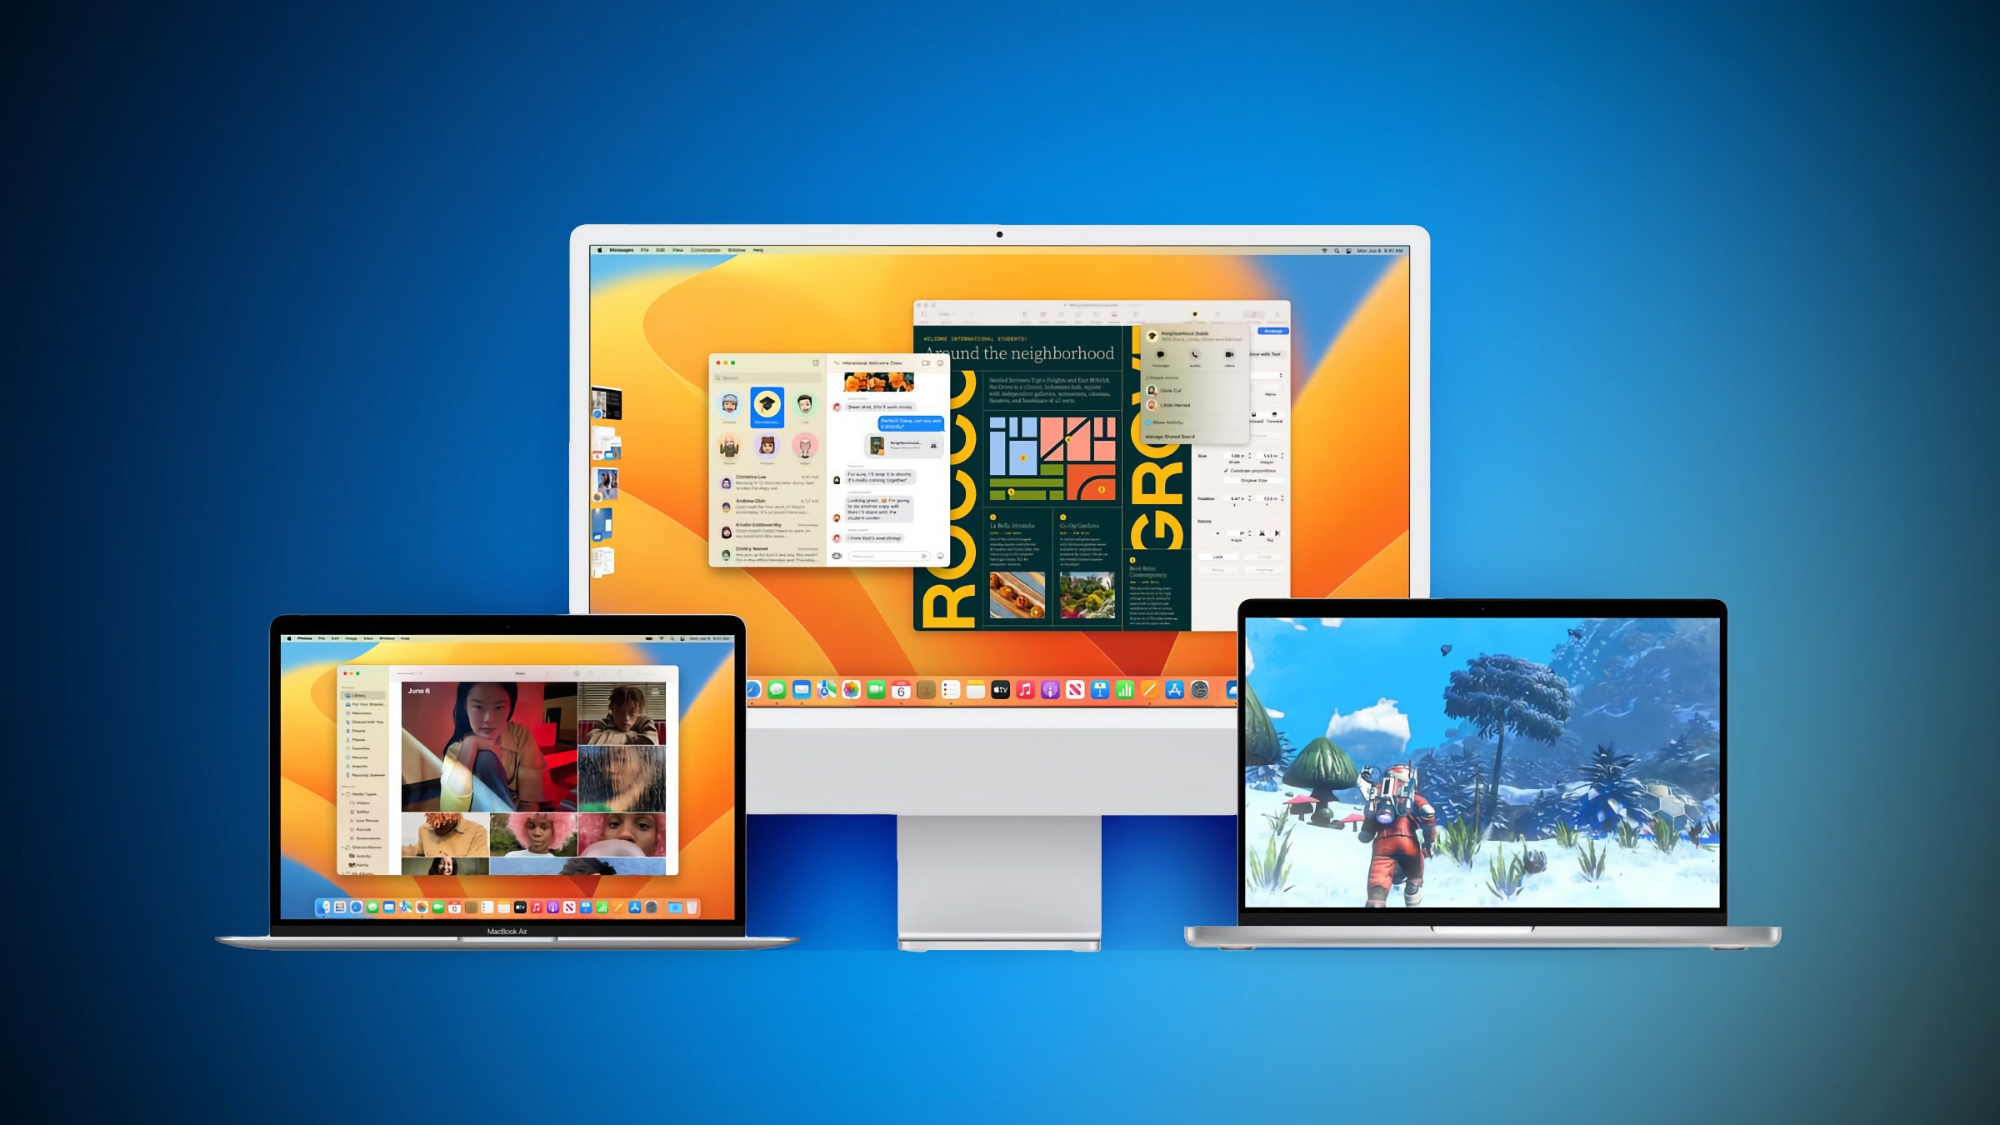 Po iOS 16.2: wydano stabilną wersję macOS Ventura 13.1 z aplikacją Freeform i poprawionymi zabezpieczeniami